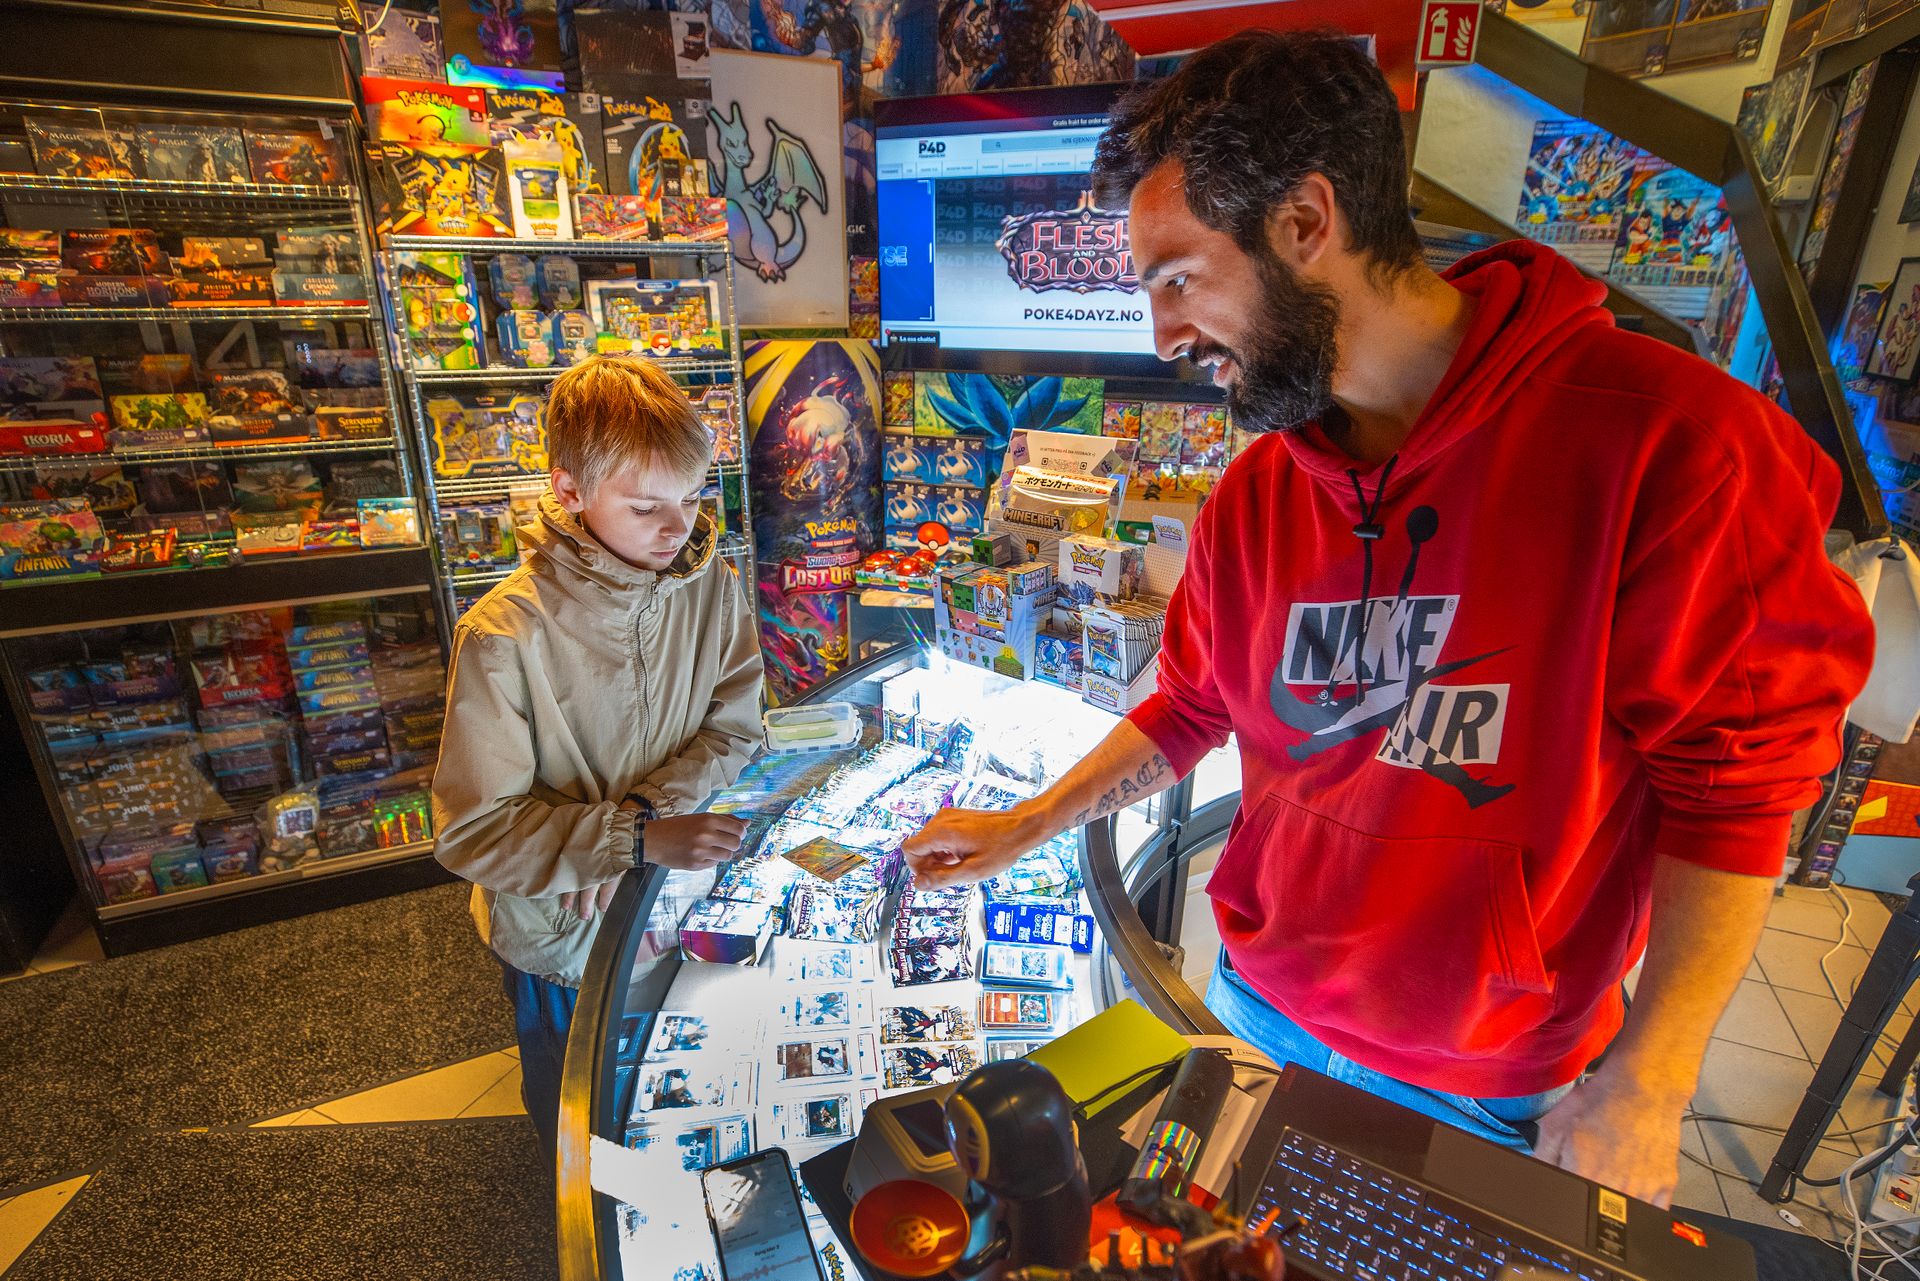 En gutt med lyst hår står ved disken inne i en butikk med veldig mange figurer, lys og kort, og bak disken står en mann i rød hettegenser som ser på kortet som gutten har lagt på disken